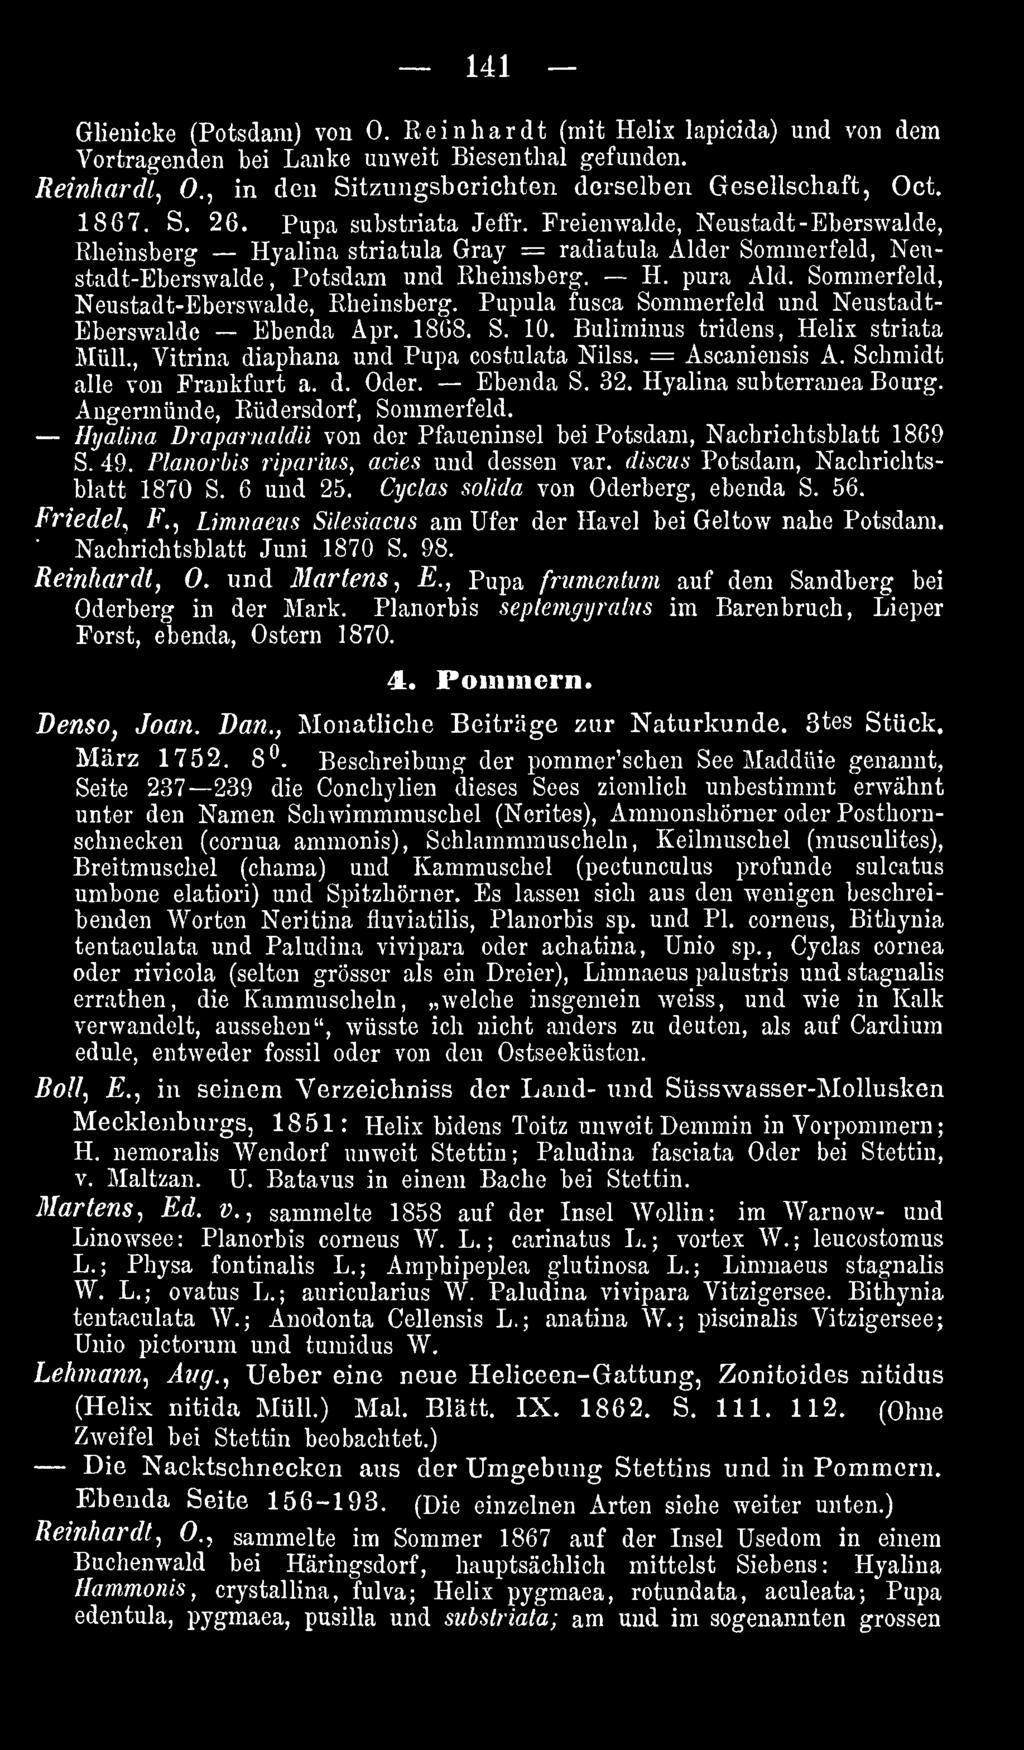 Hyalina Draparnaldü von der Pfaueninsel bei Potsdam, Nachrichtsblatt 1869 S. 49. Planorhis riparius, acies und dessen var. discus Potsdam, Nachrichtsblatt 1870 S. 6 und 25.